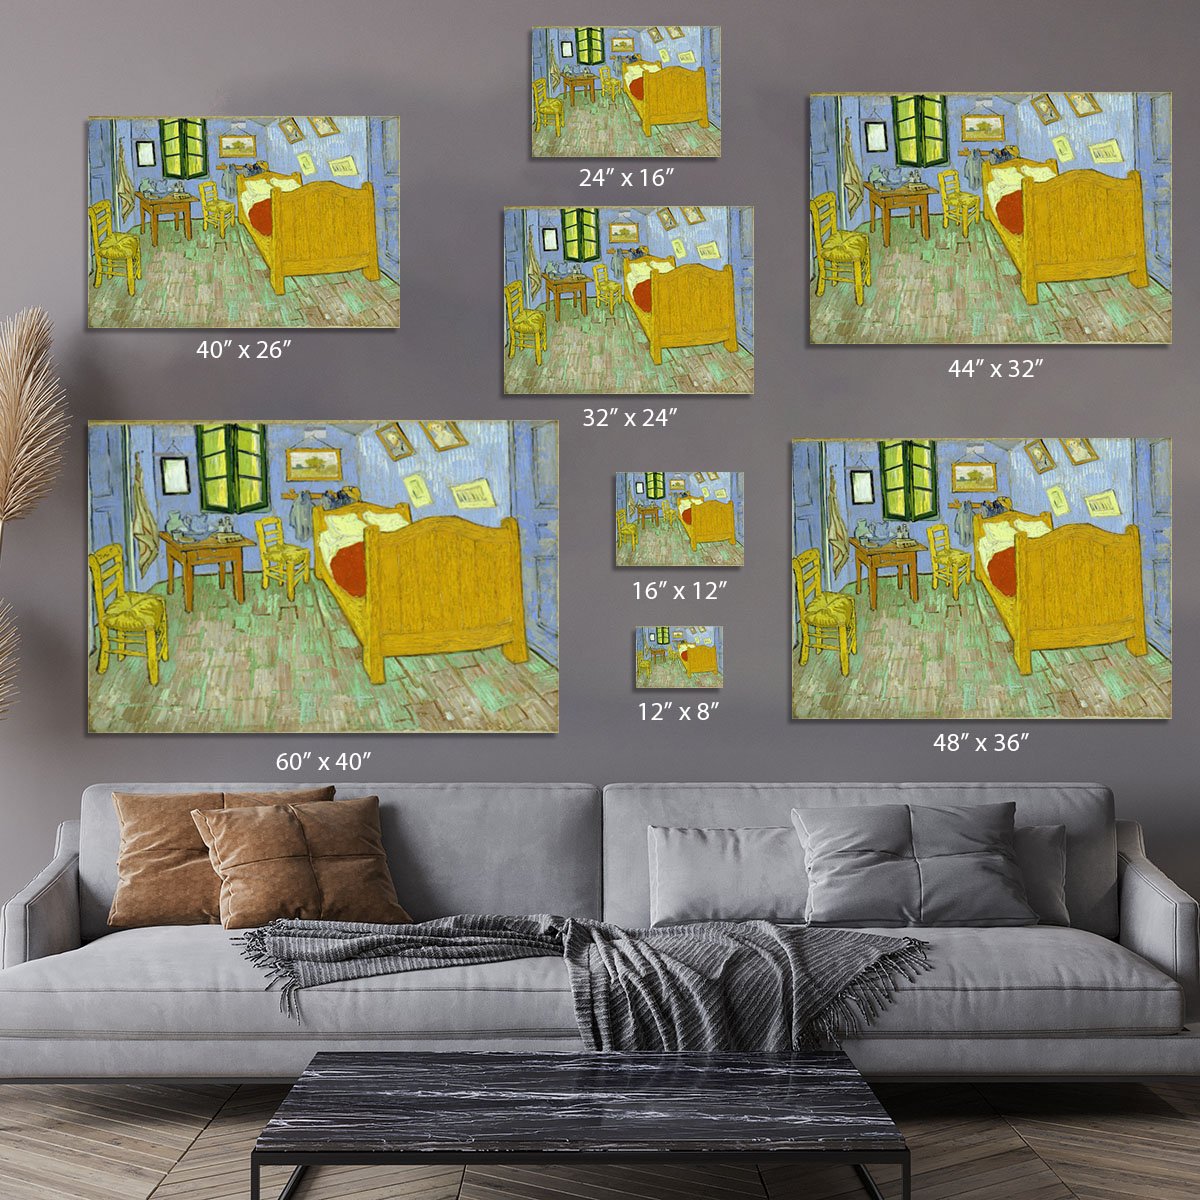 Van Gogh Vincents bedroom Canvas Print or Poster